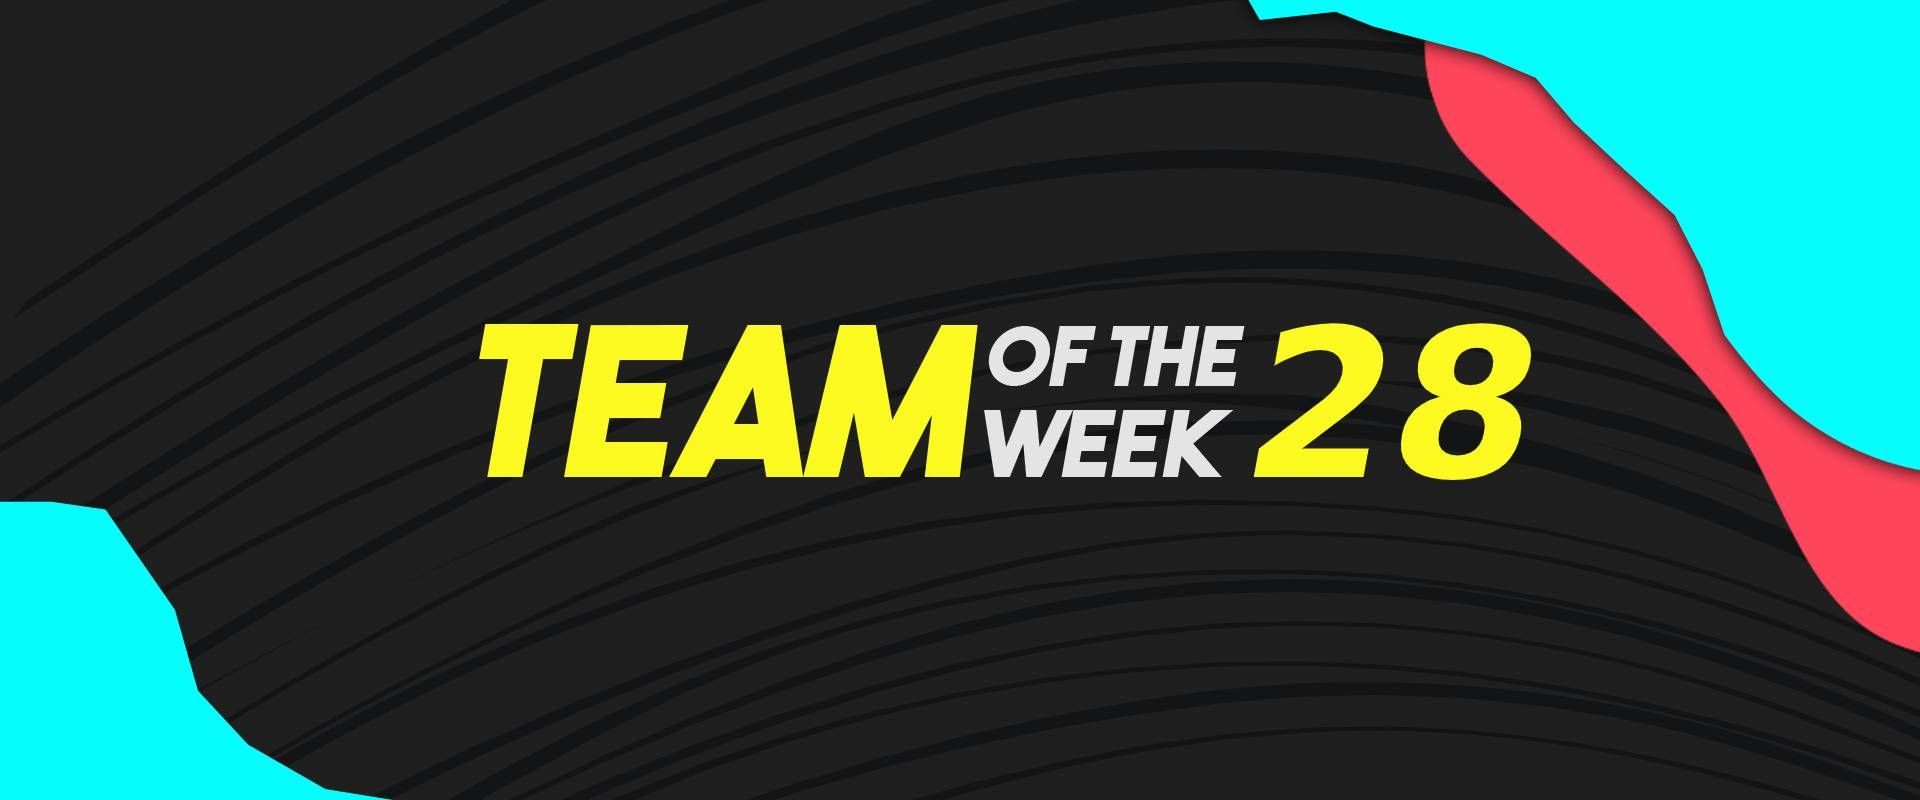 Szoboszlaival megerősített keretet hozott a Team of the Week 28!